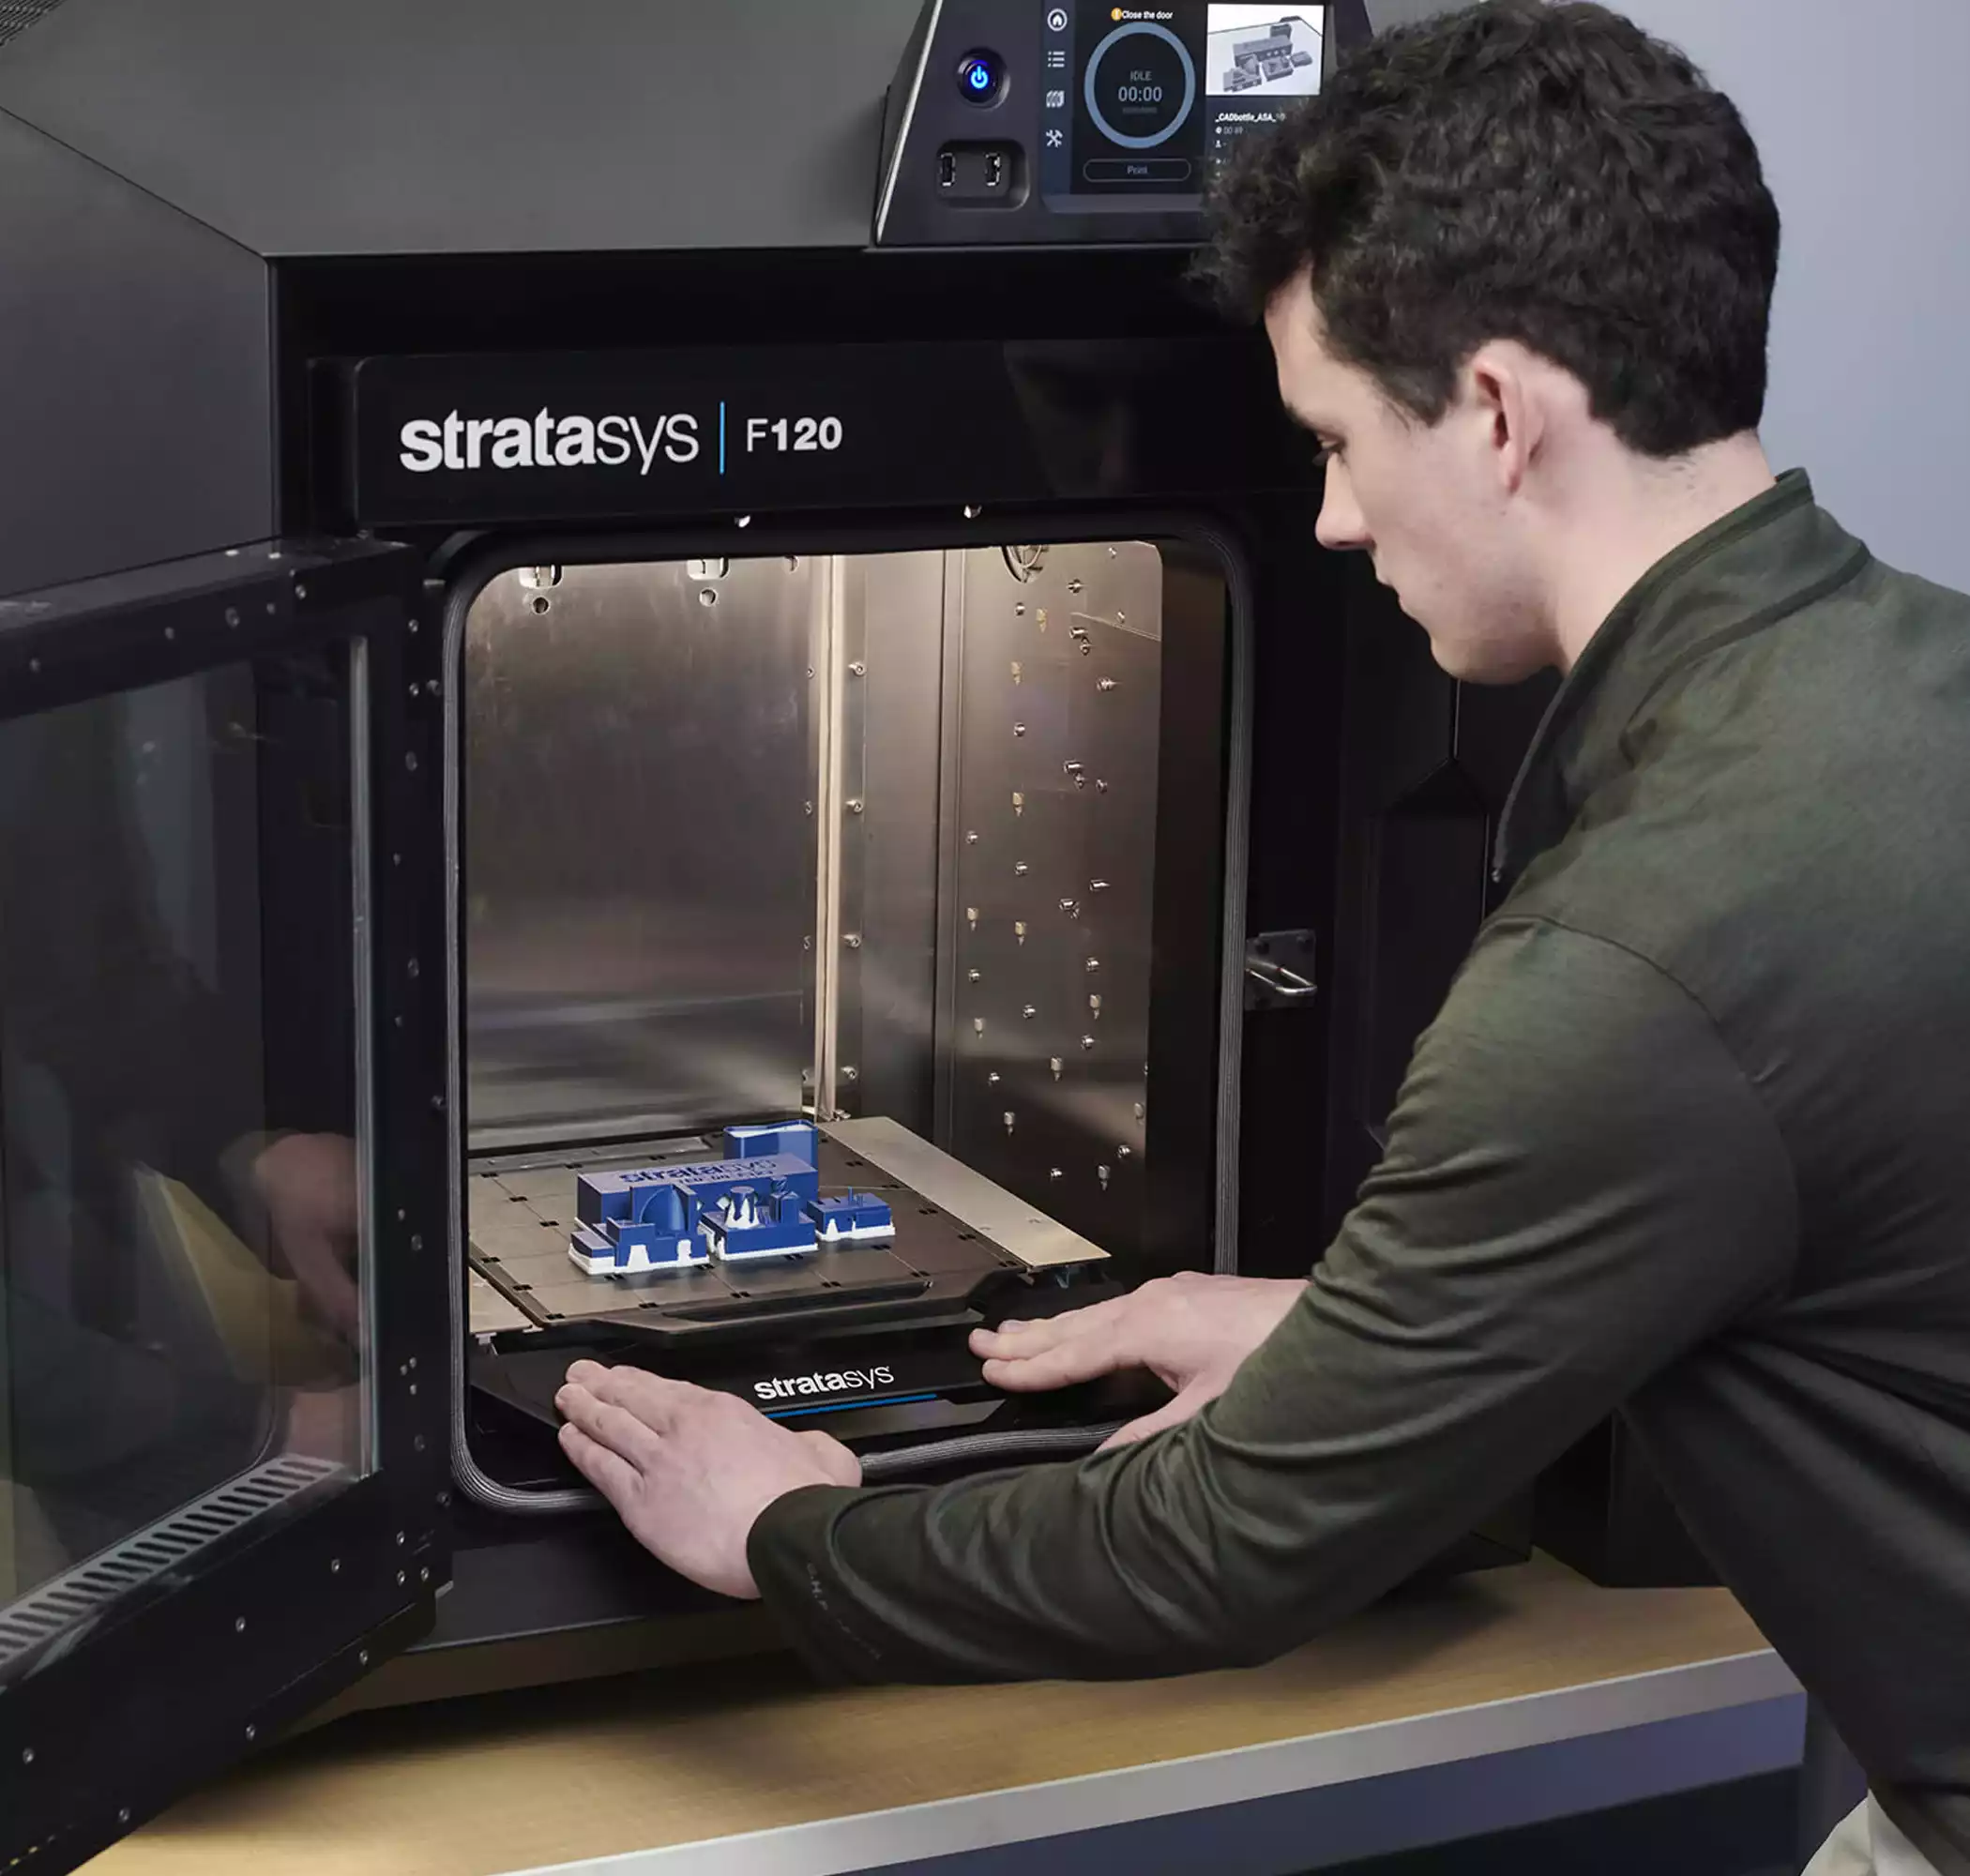 Stratasys 3D printers